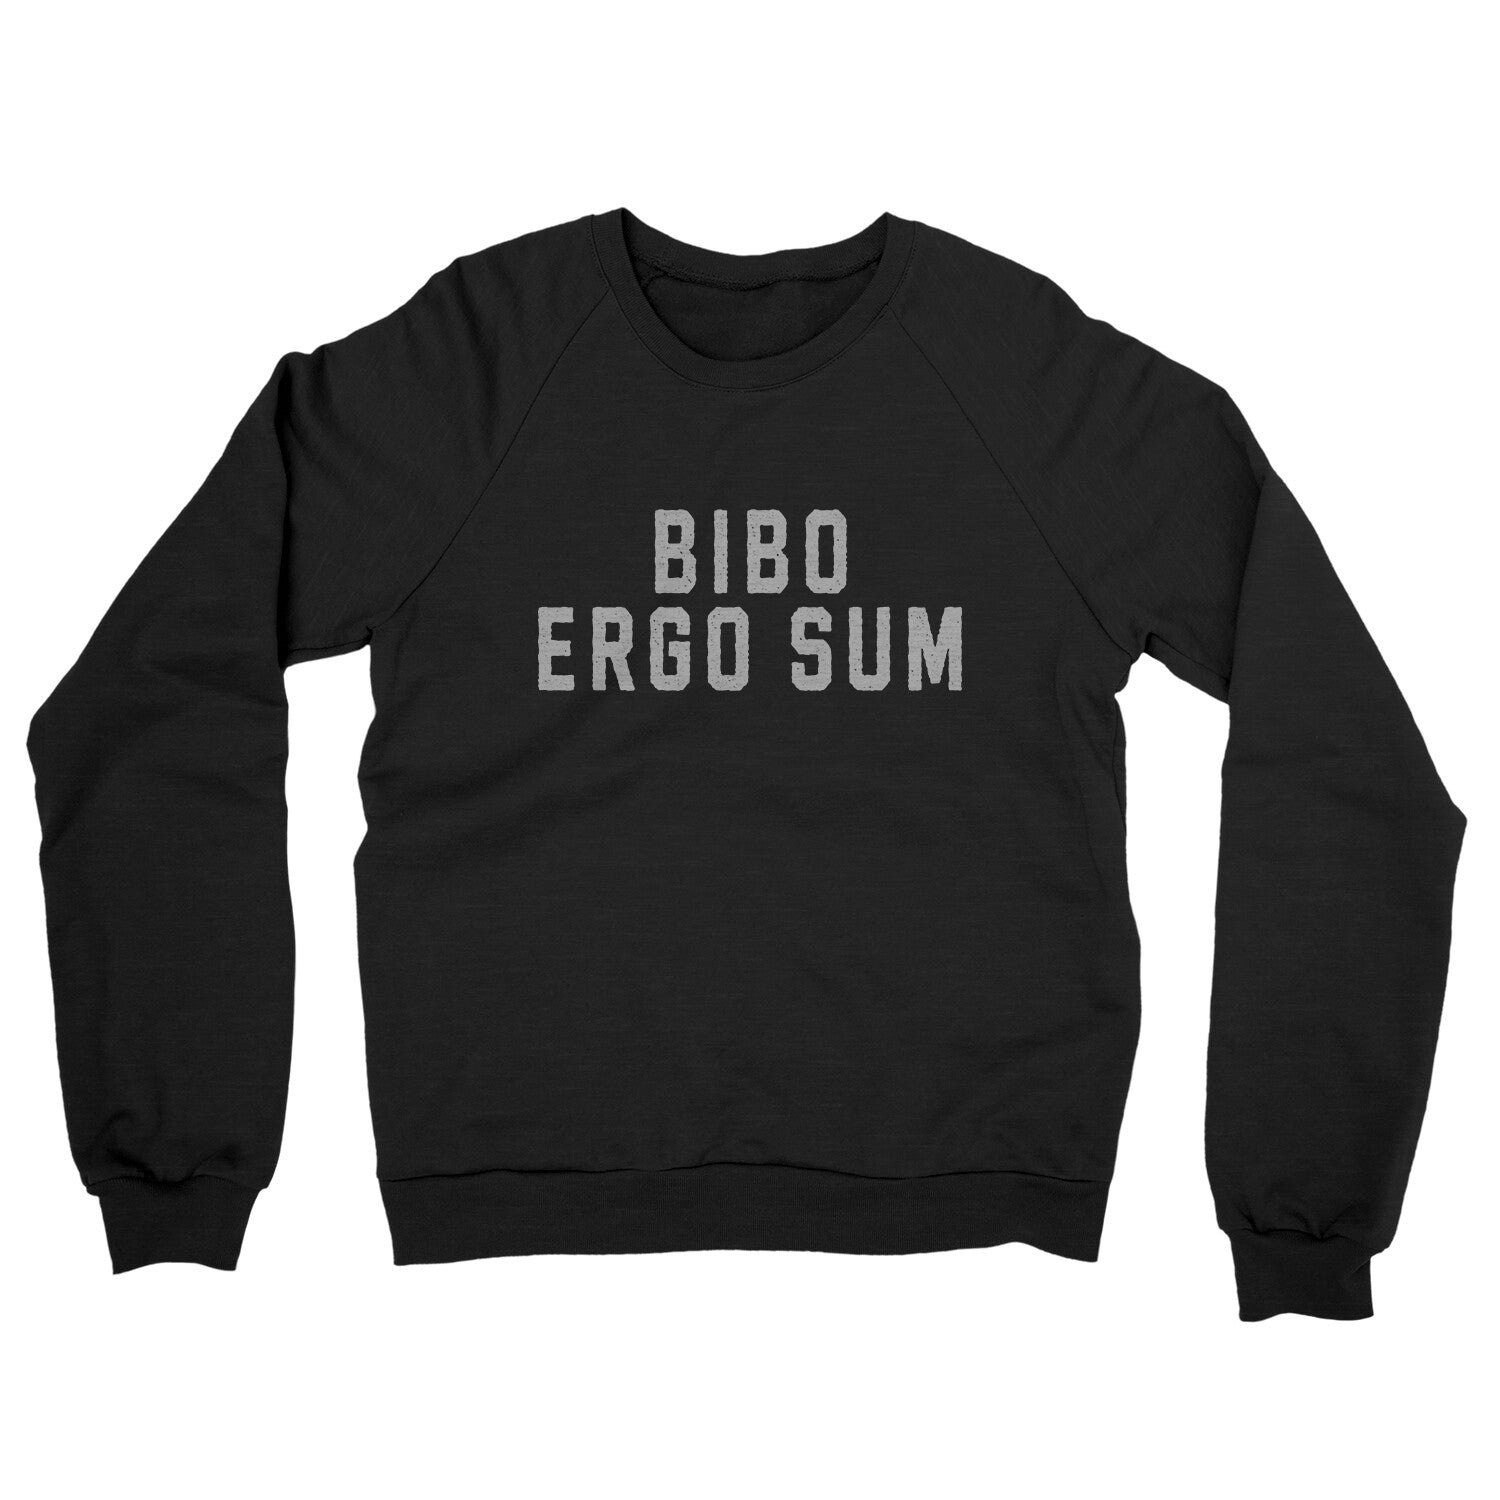 Bibo Ergo Sum in Black Color